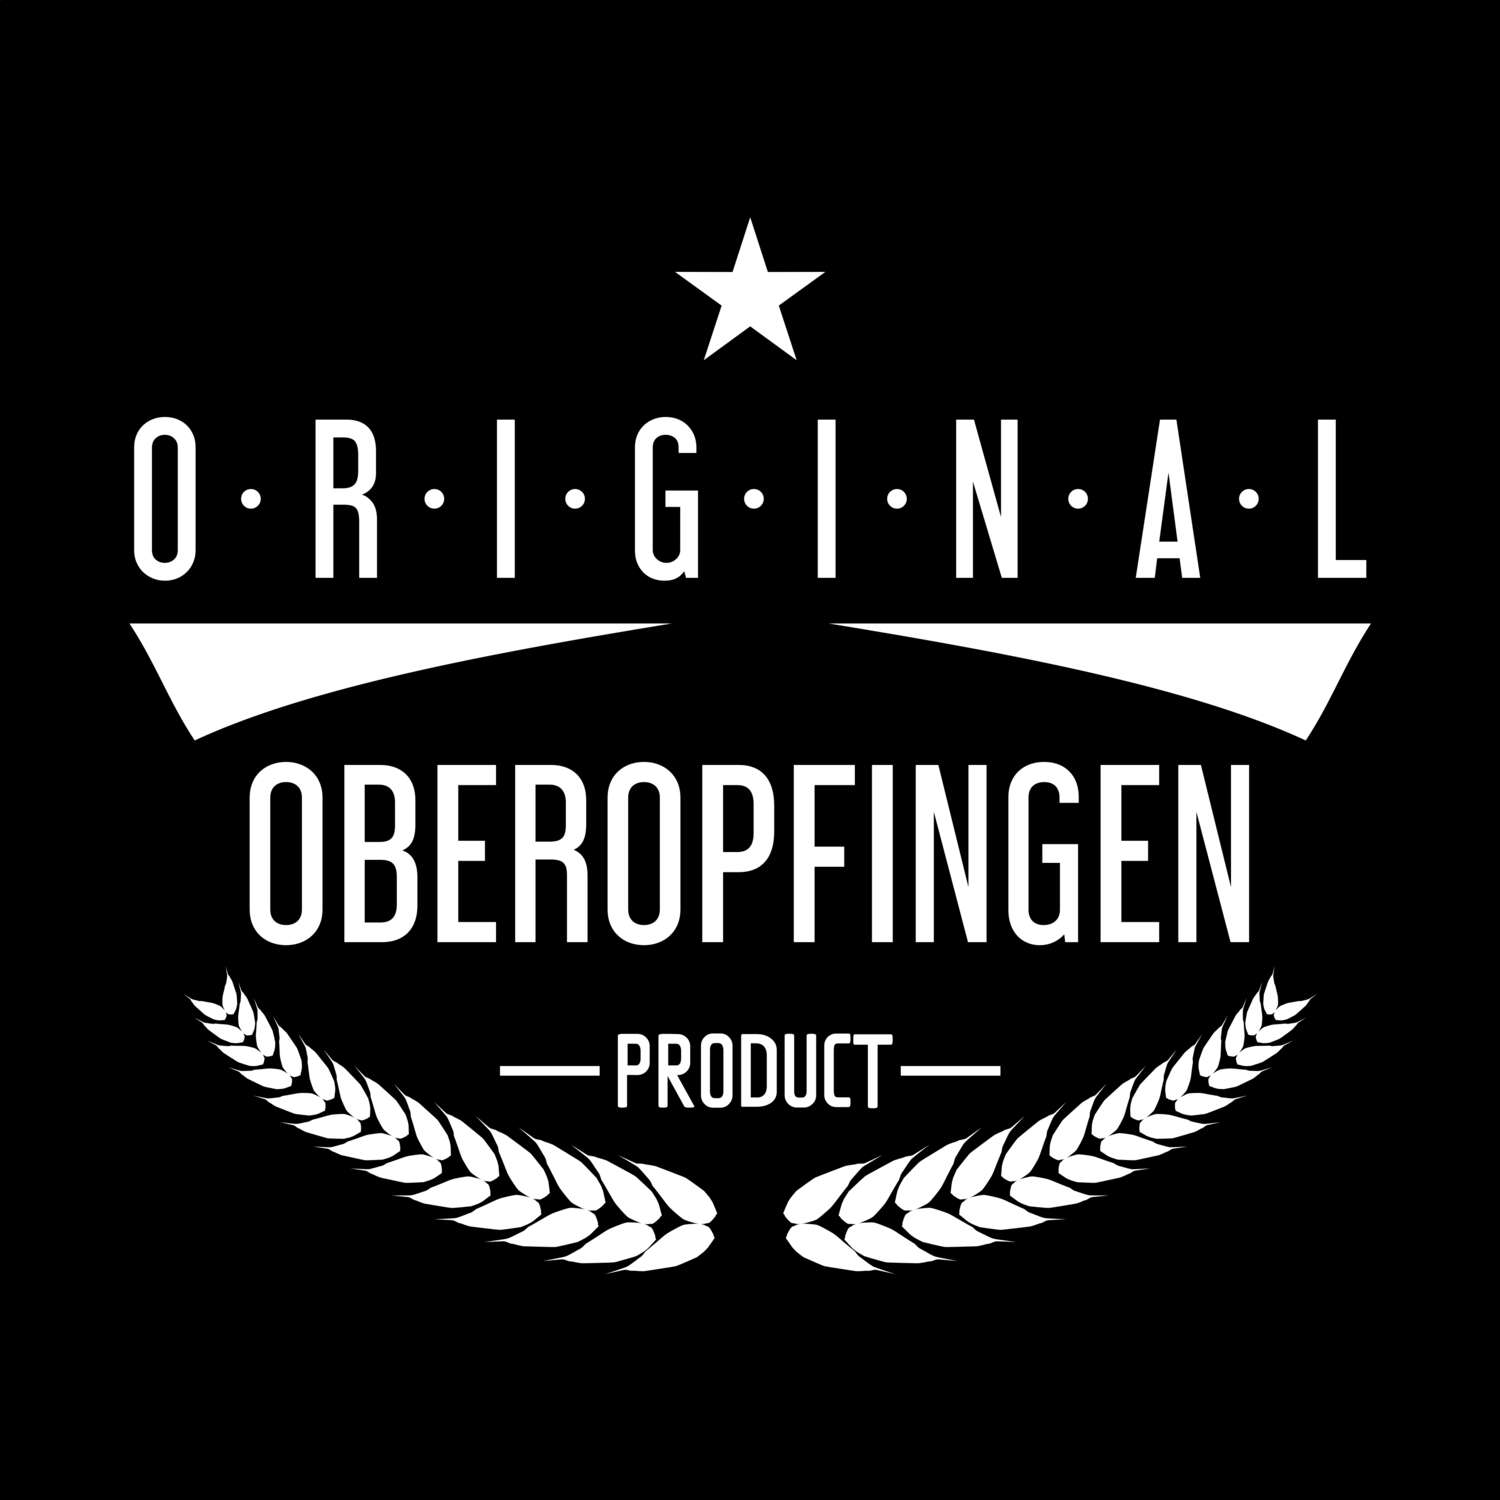 Oberopfingen T-Shirt »Original Product«